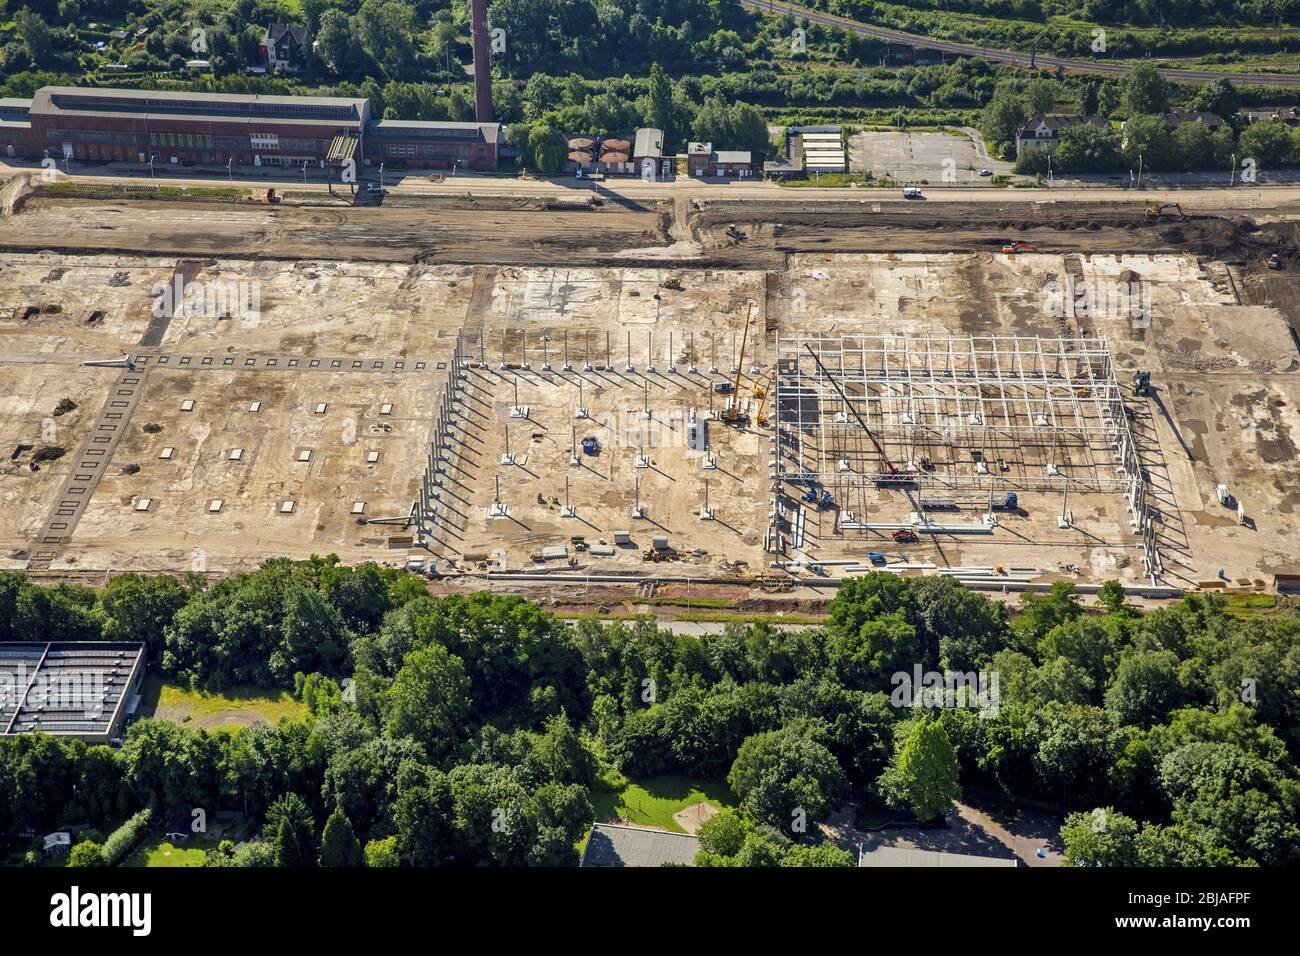 Bau eines neuen Distributionszentrums und Logistikkomplexes auf dem Opel-Areal in Langendreer in Bochum, 23.06.2016, Luftaufnahme, Deutschland, Nordrhein-Westfalen, Ruhrgebiet, Bochum Stockfoto